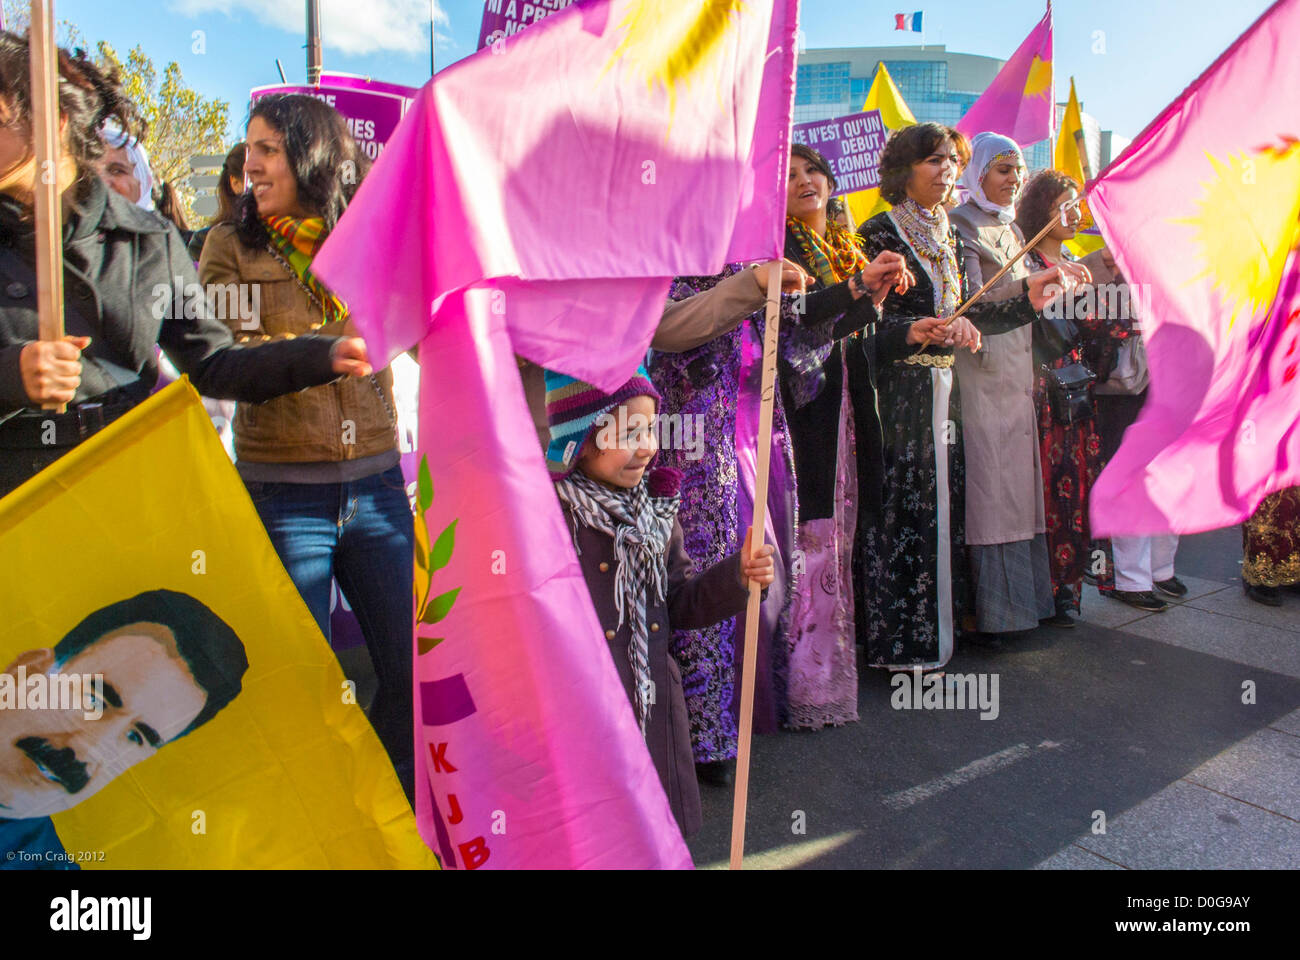 Paris, France, différents groupes féministes ont organisé une marche contre la violence à l'égard des femmes, à Paris, dans le cadre d'un mouvement international de marche des droits des femmes, les femmes kurdes Banque D'Images